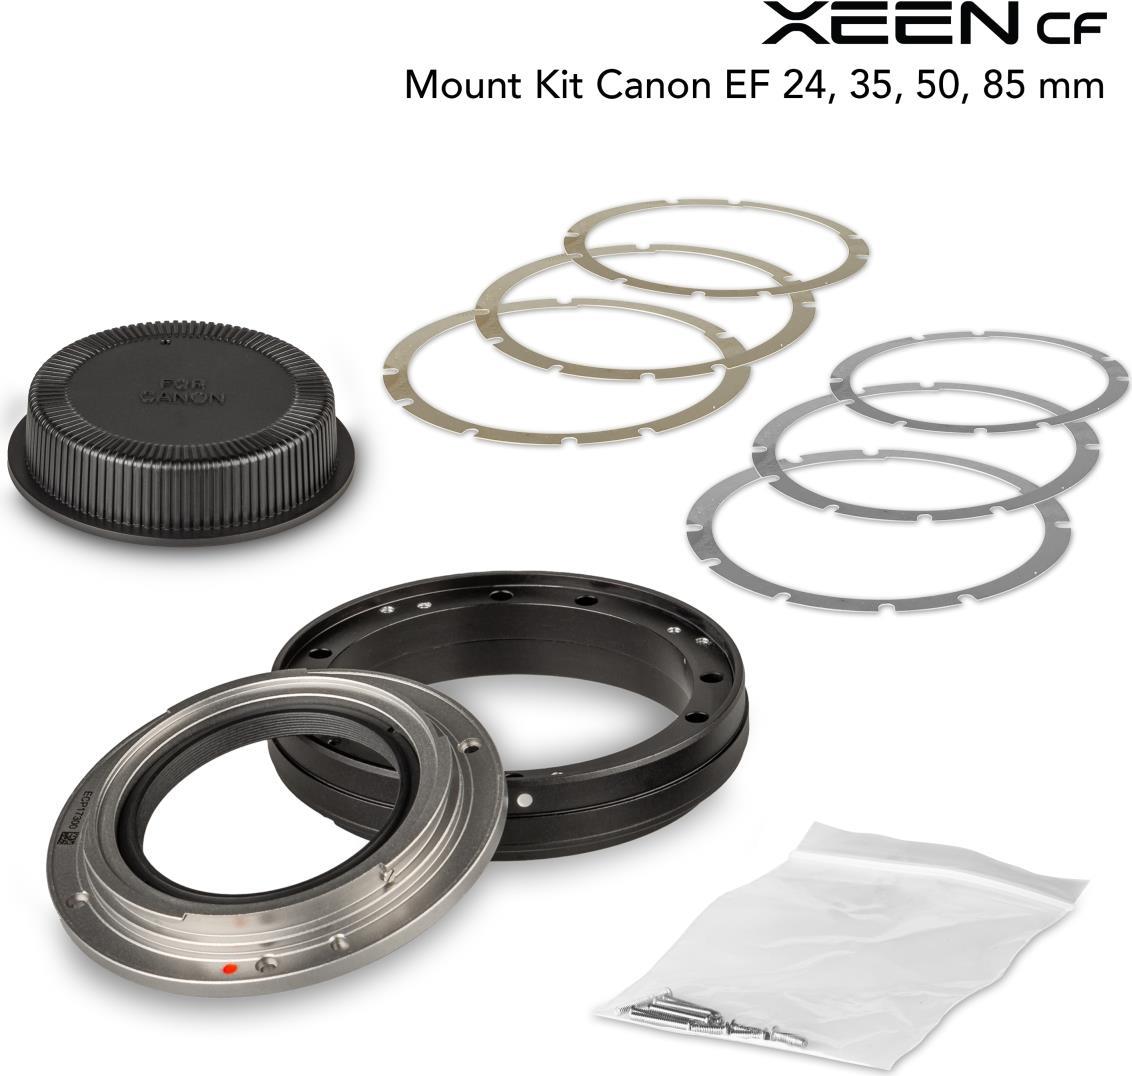 XEEN CF Mount Kit Canon EF 24, 35, 50, 85 mm (23057)